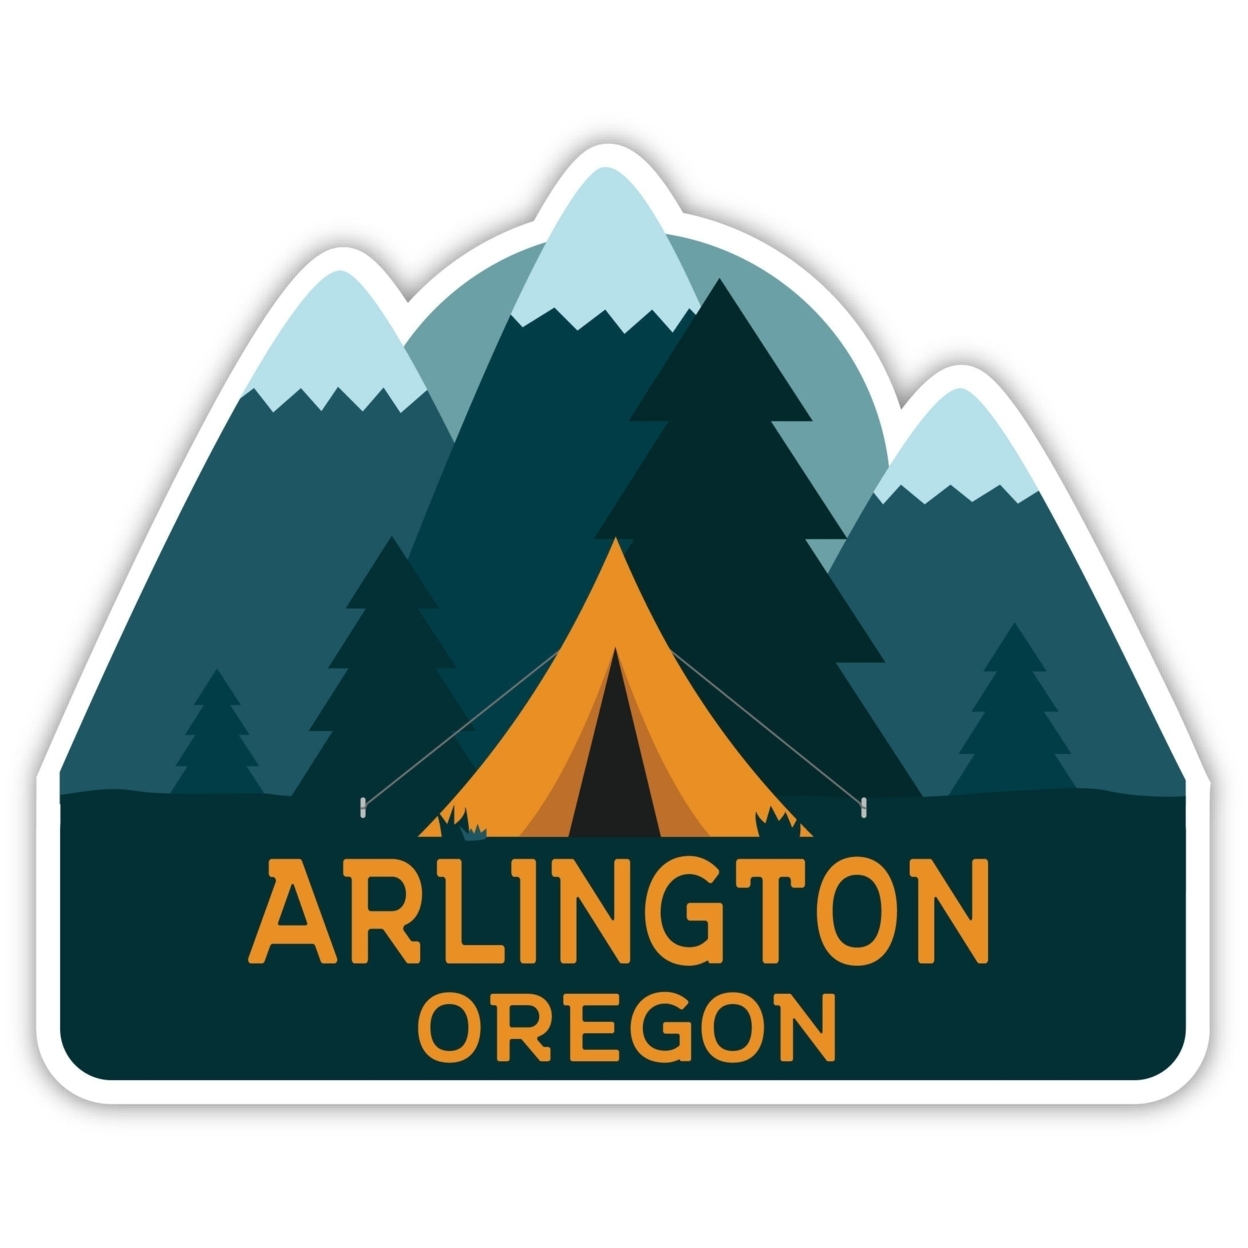 Arlington Oregon Souvenir Decorative Stickers (Choose Theme And Size) - Single Unit, 4-Inch, Tent